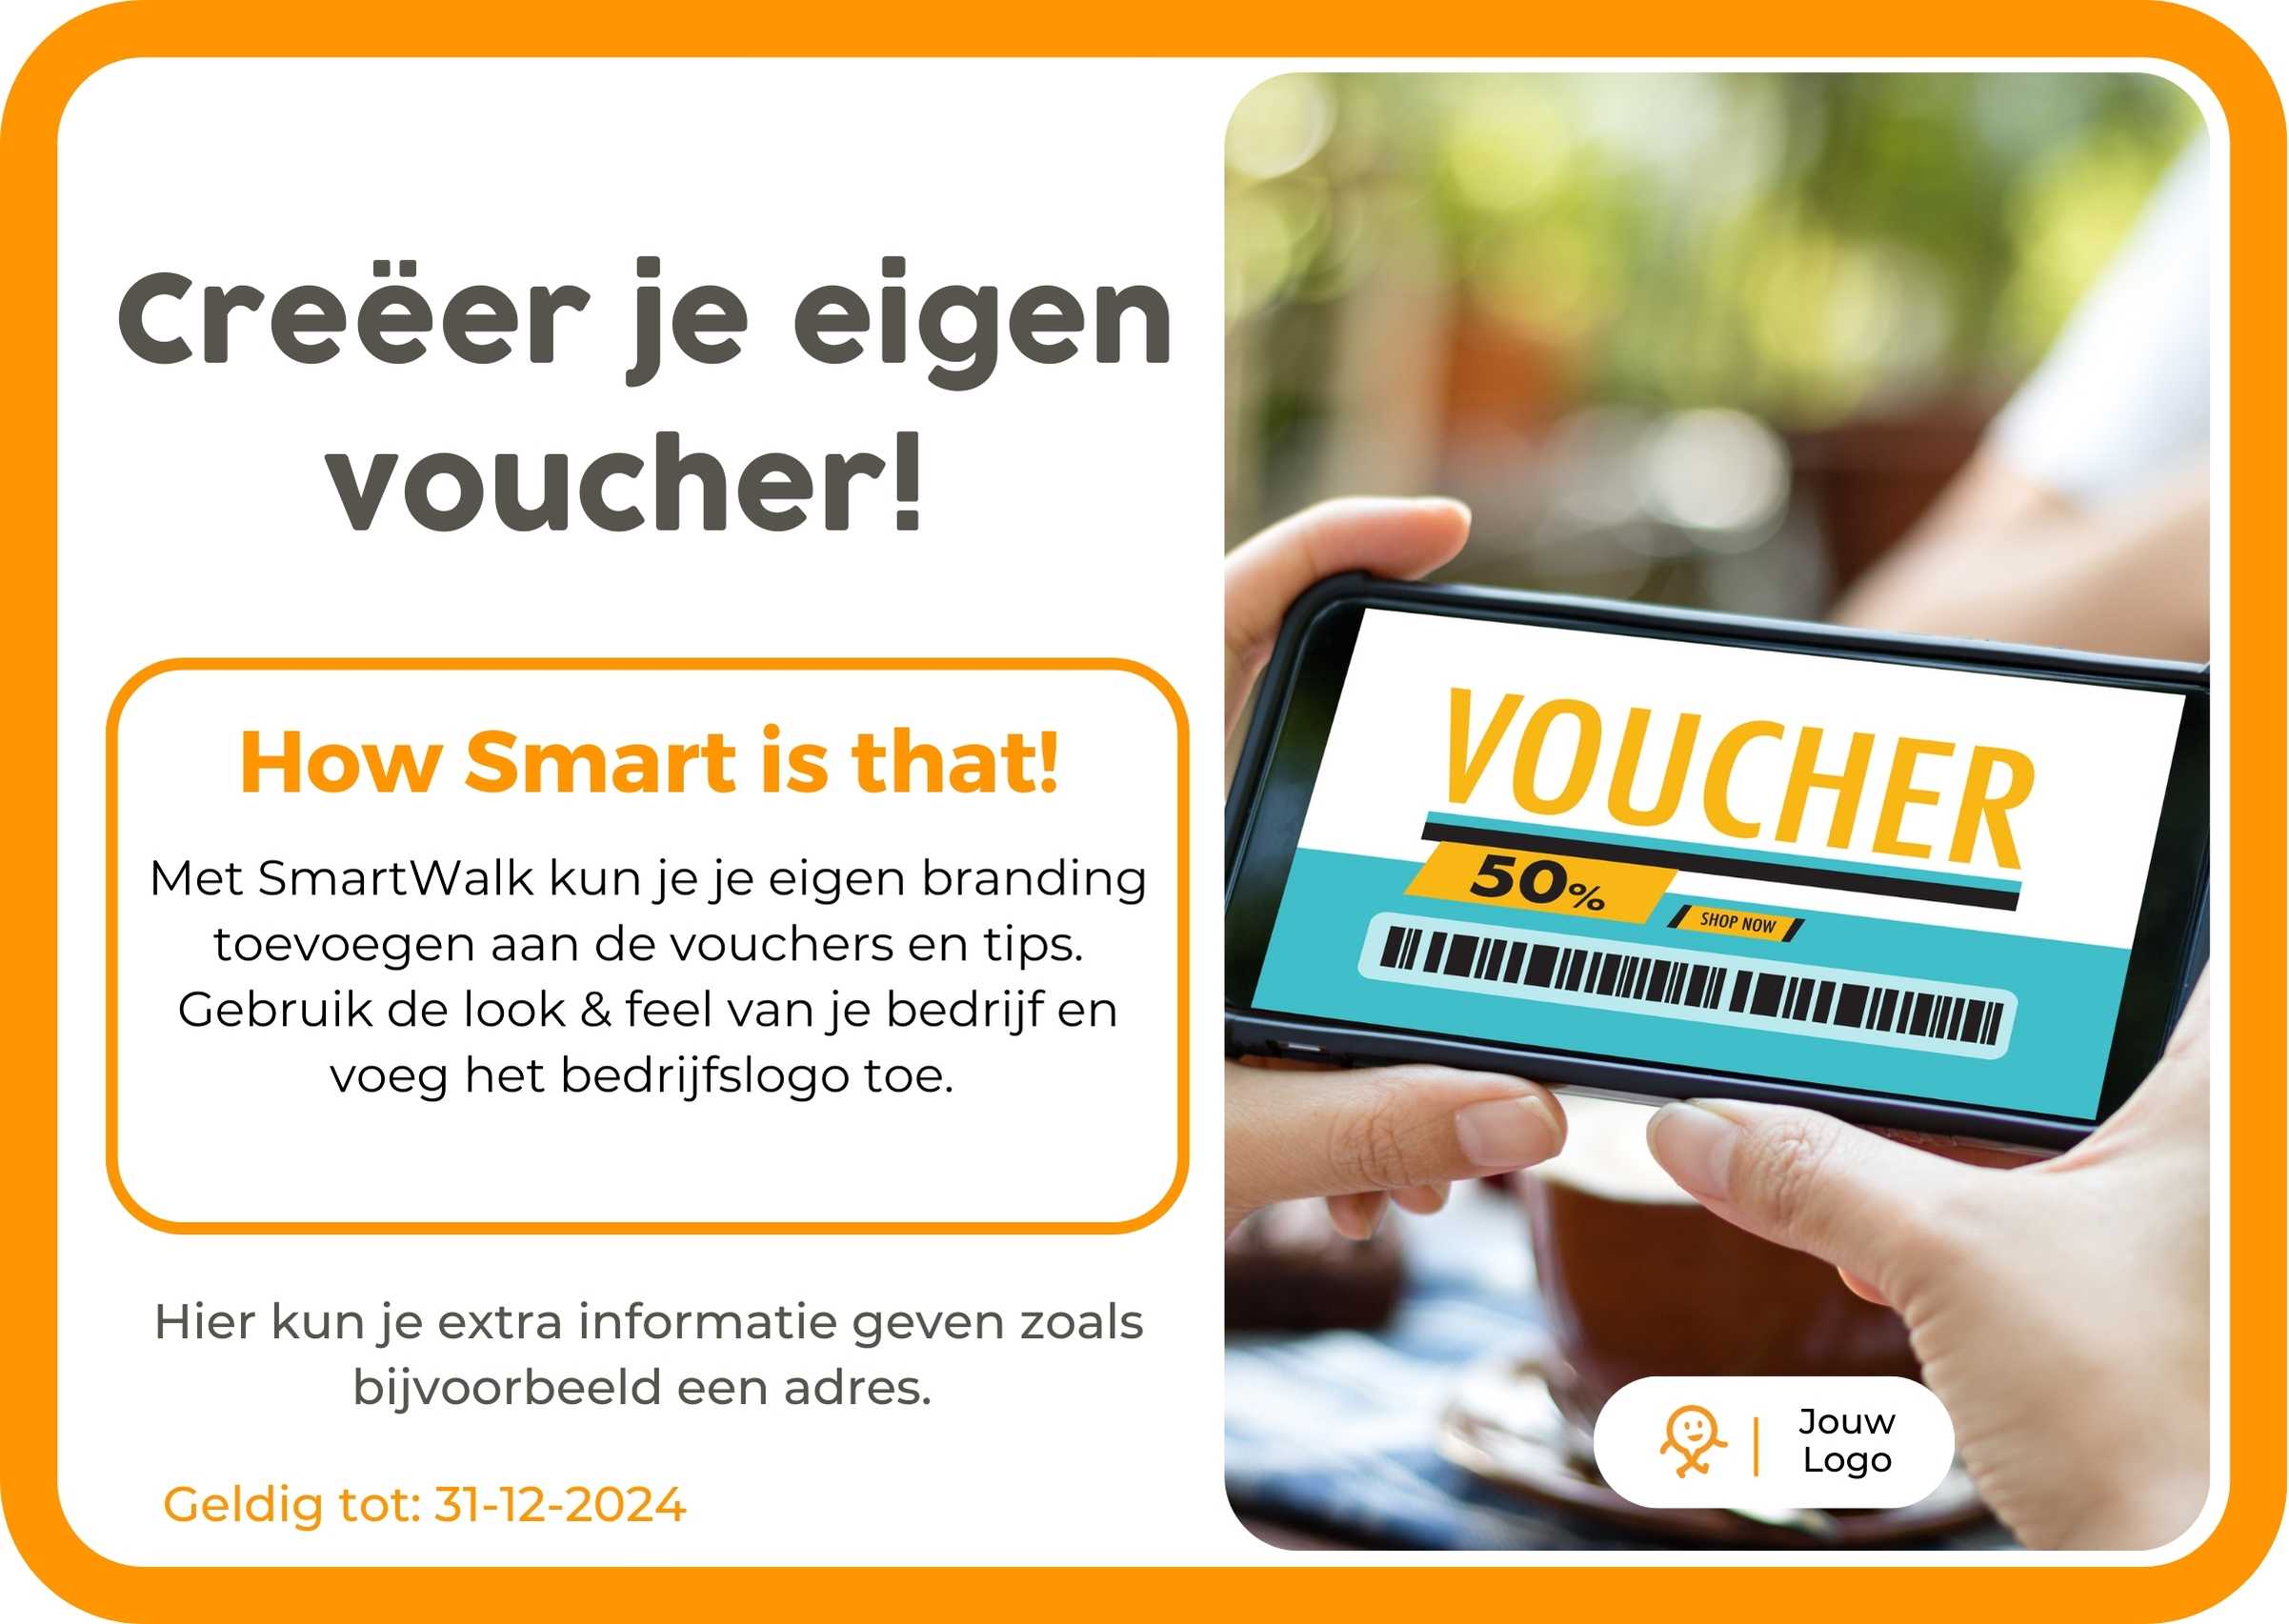 NL - Demo voucher